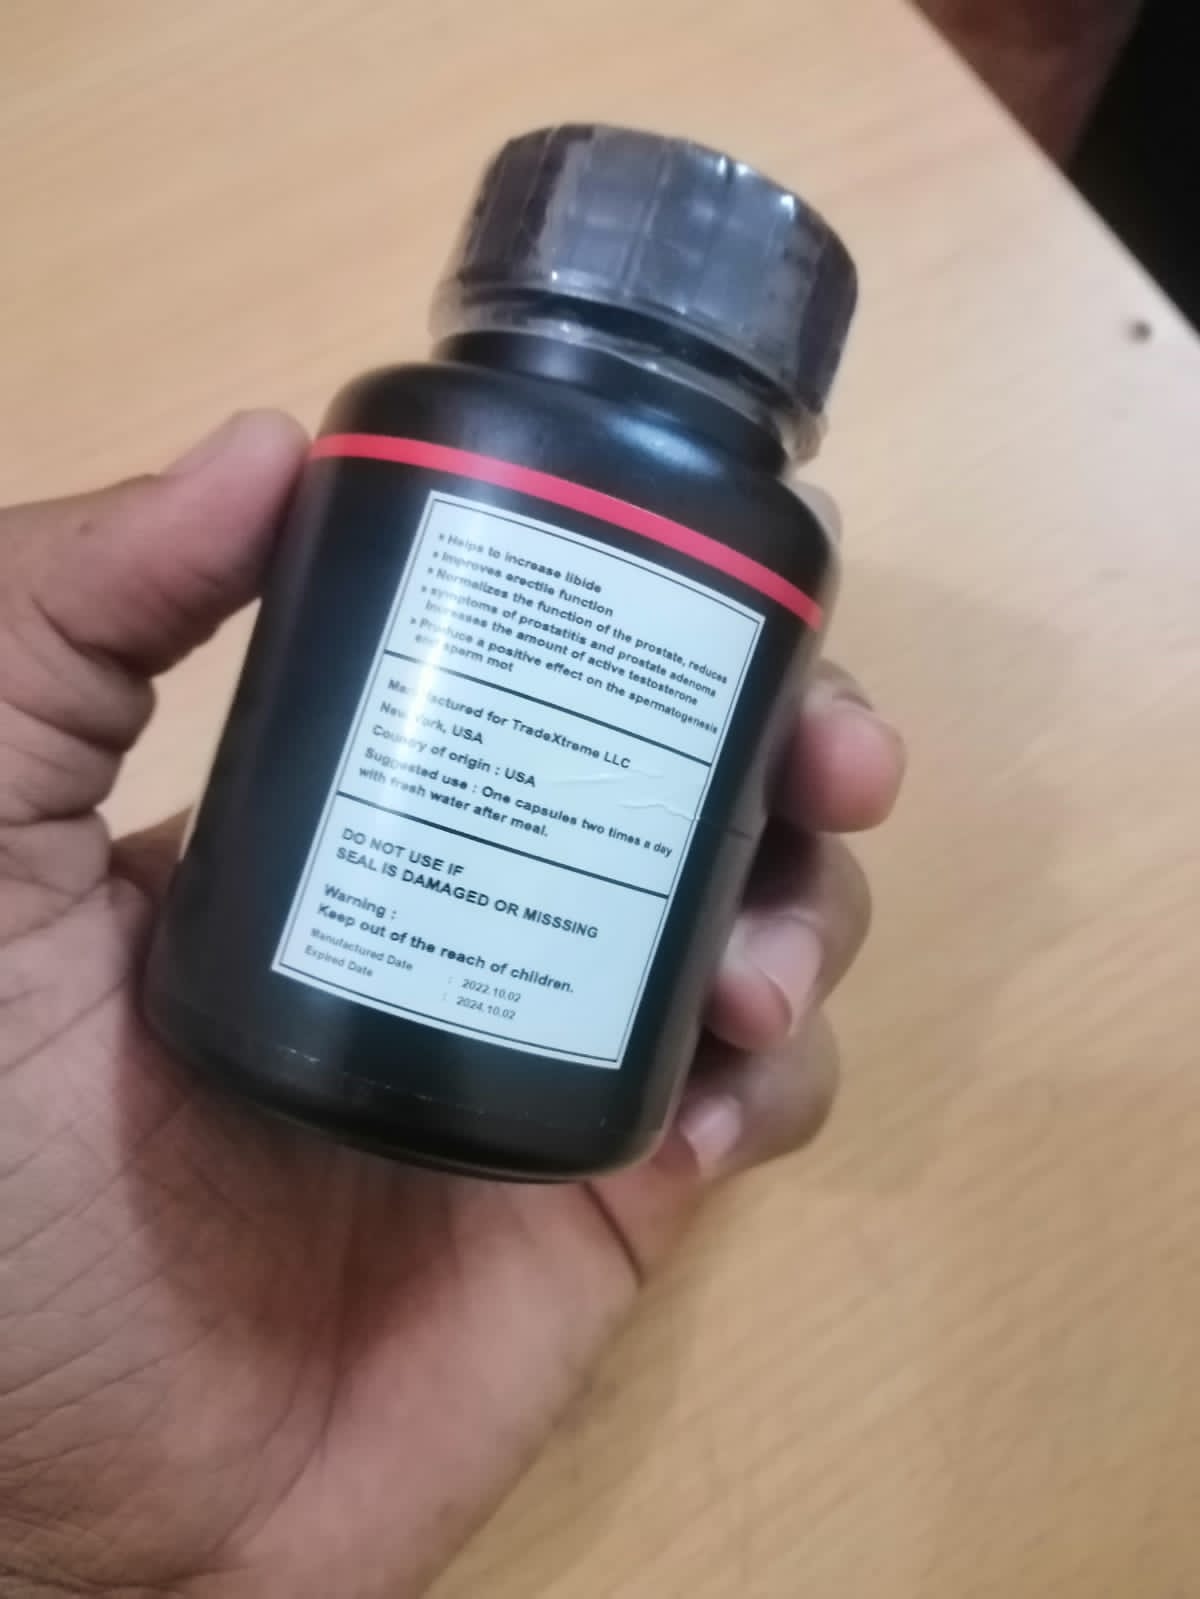 Black maca 60 capsules original